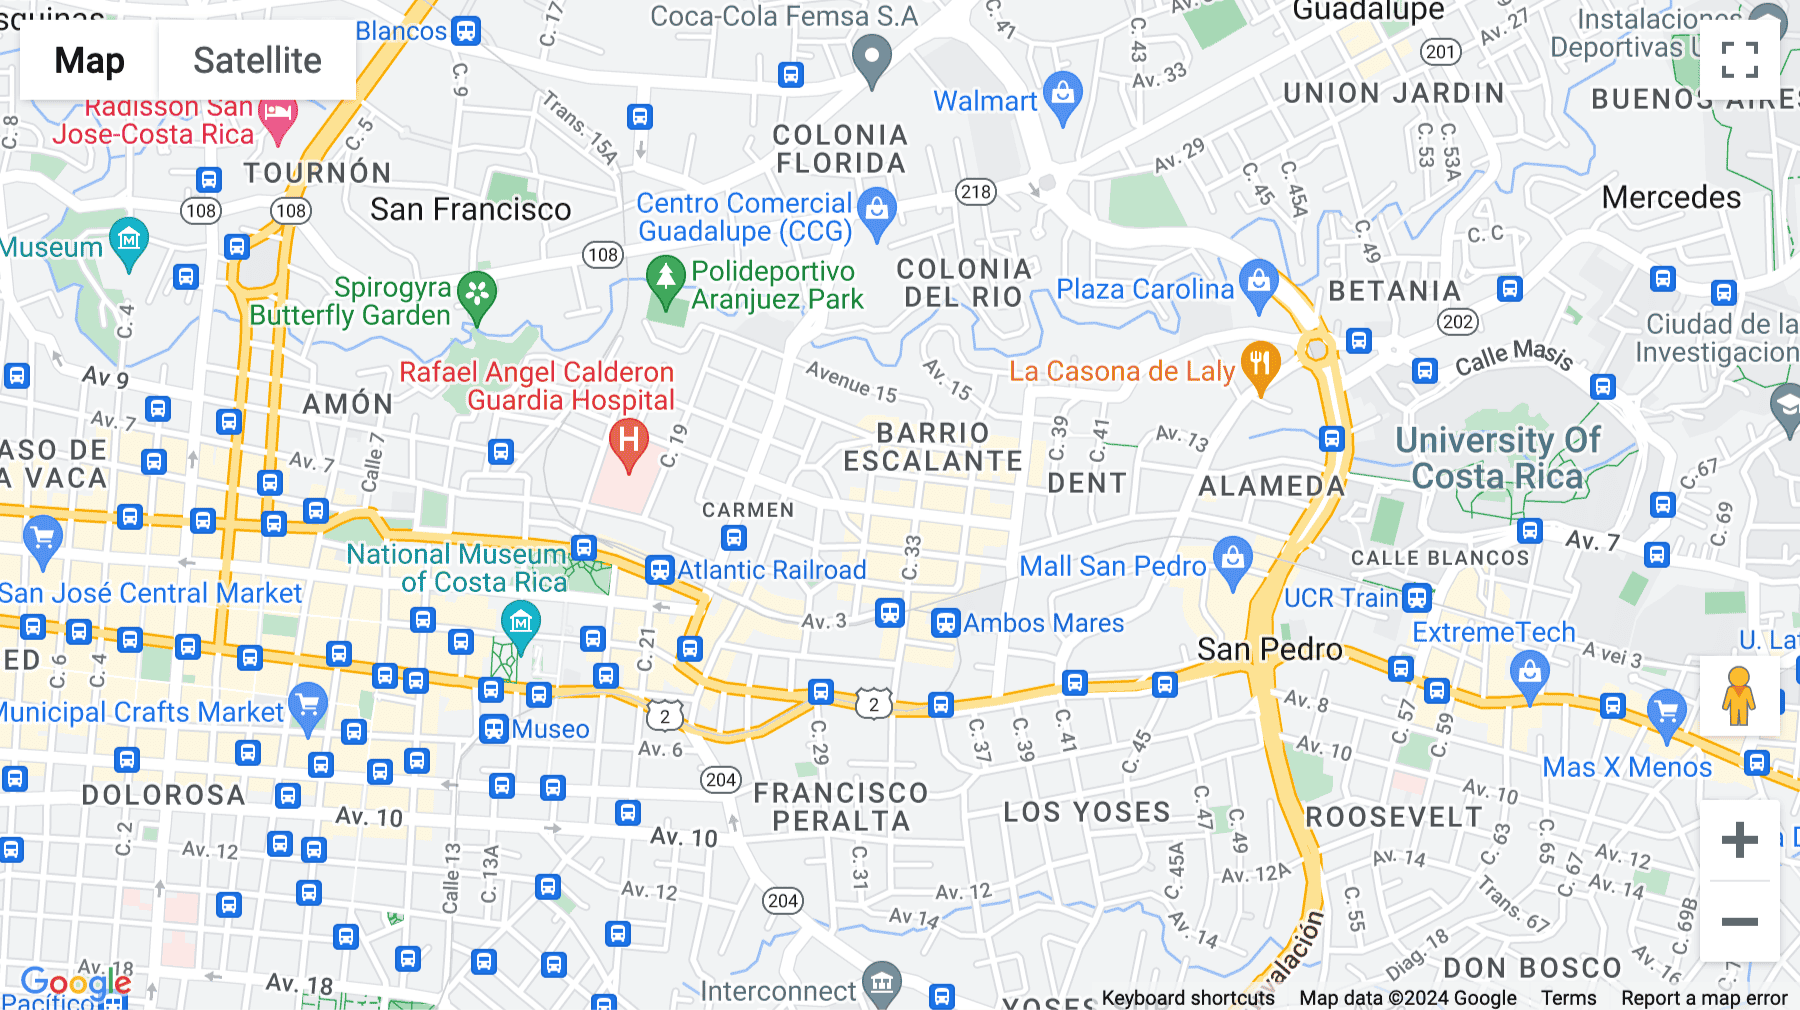 Click for interative map of Avenida 9, Calle 31-33, 50 oeste del Fresh Market (tapia ladrillos), San Jose